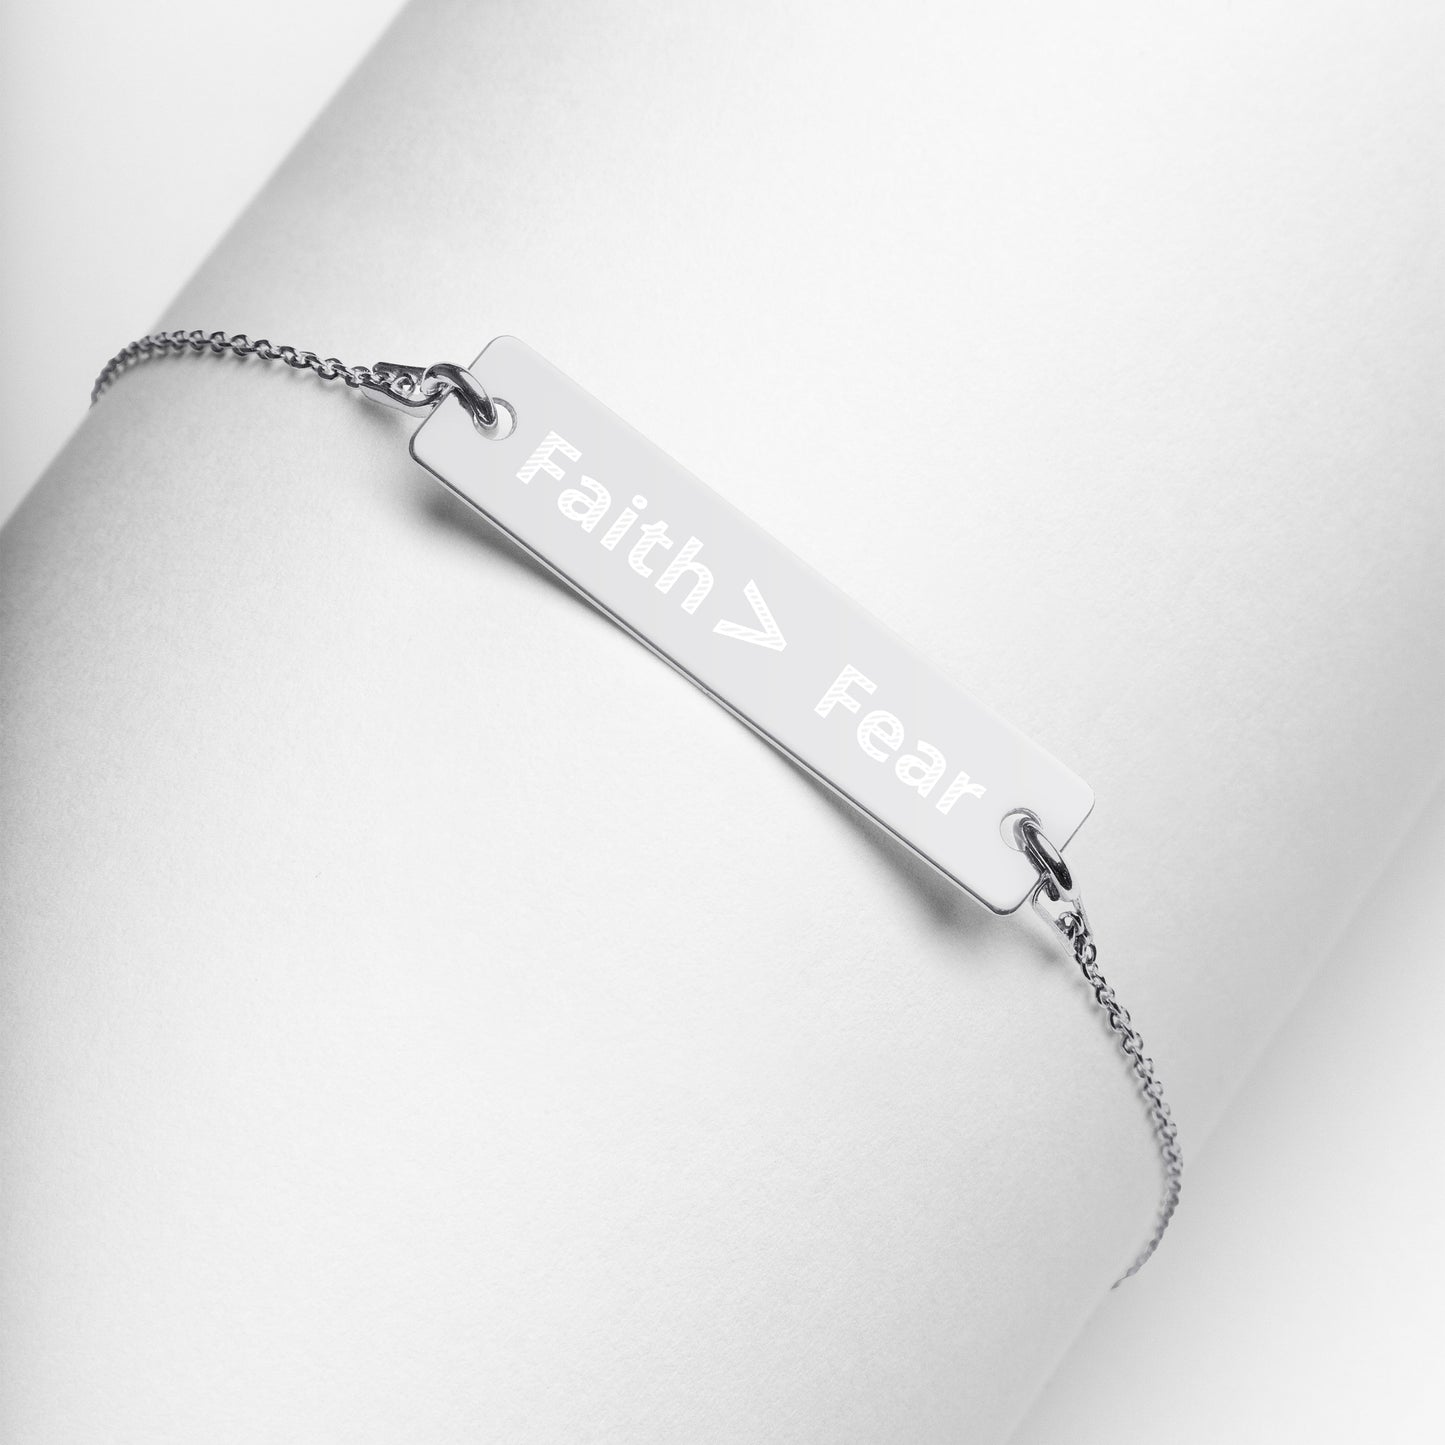 Faith > Fear Engraved Silver Bar Chain Bracelet